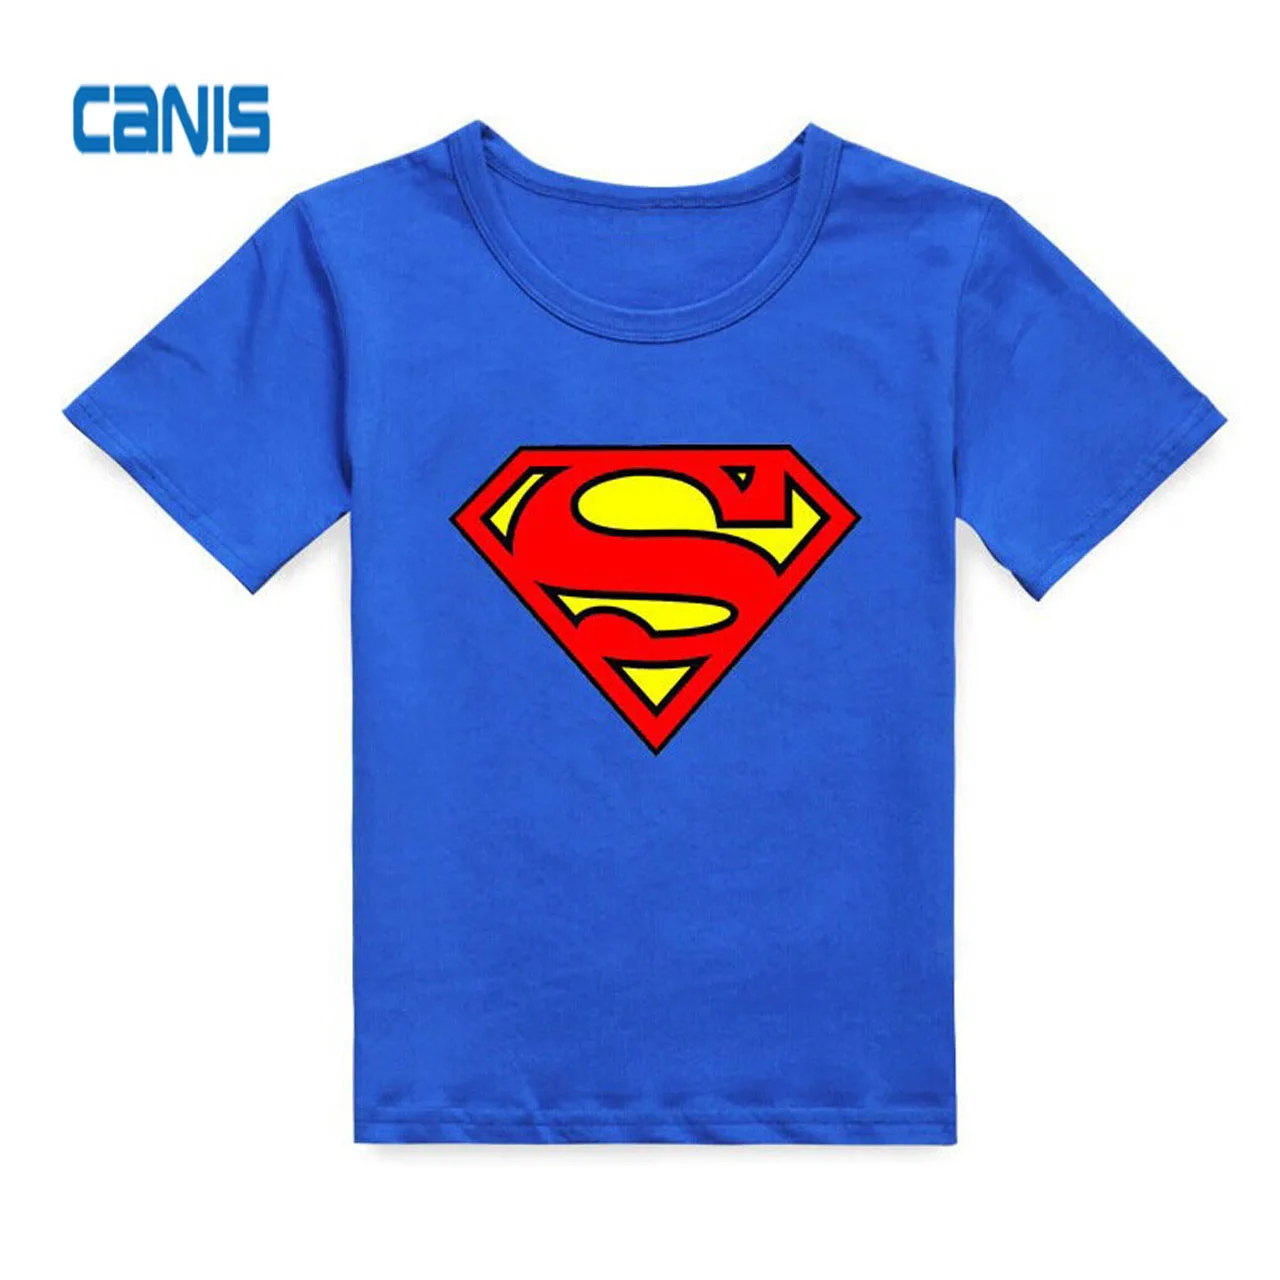 Лидер продаж; Модная хлопковая летняя футболка с короткими рукавами для маленьких мальчиков с супергероями; топы; Классная летняя одежда - Цвет: Синий